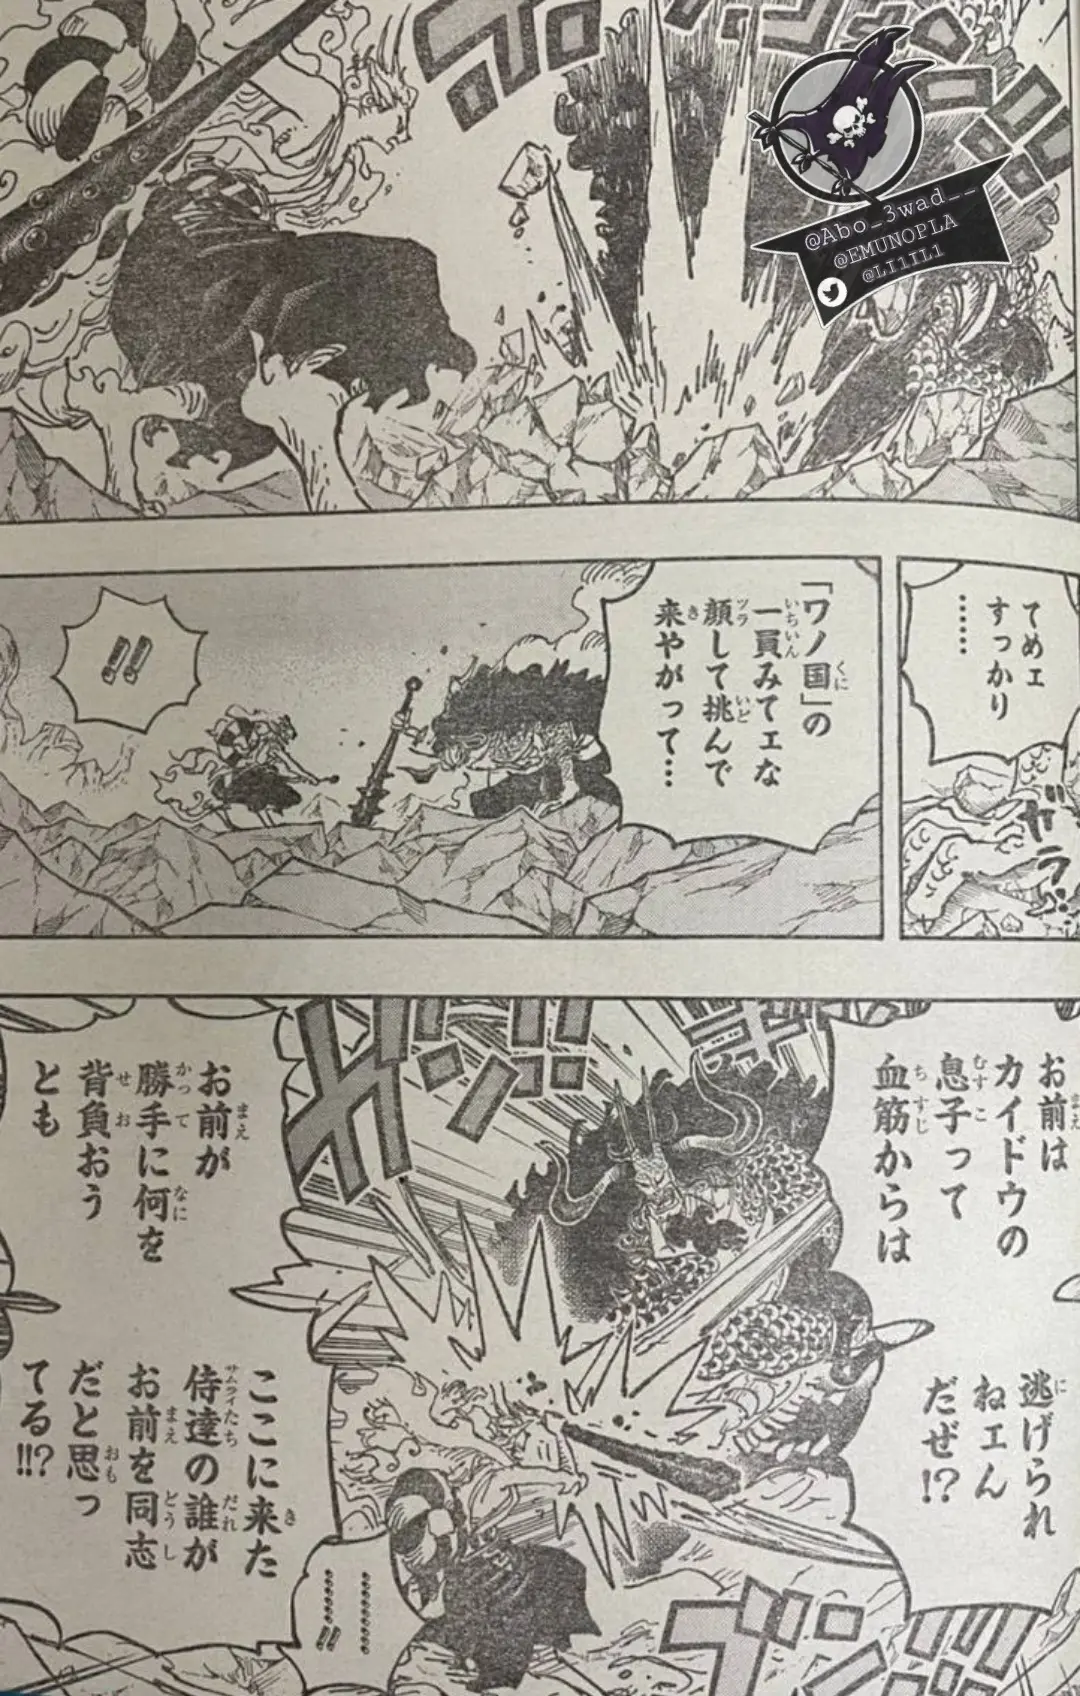 One Piece Manga 1025 Spoiler 005.jpg One Piece 1025 Spoilers: Luffy & Yamato Vs Kaido!